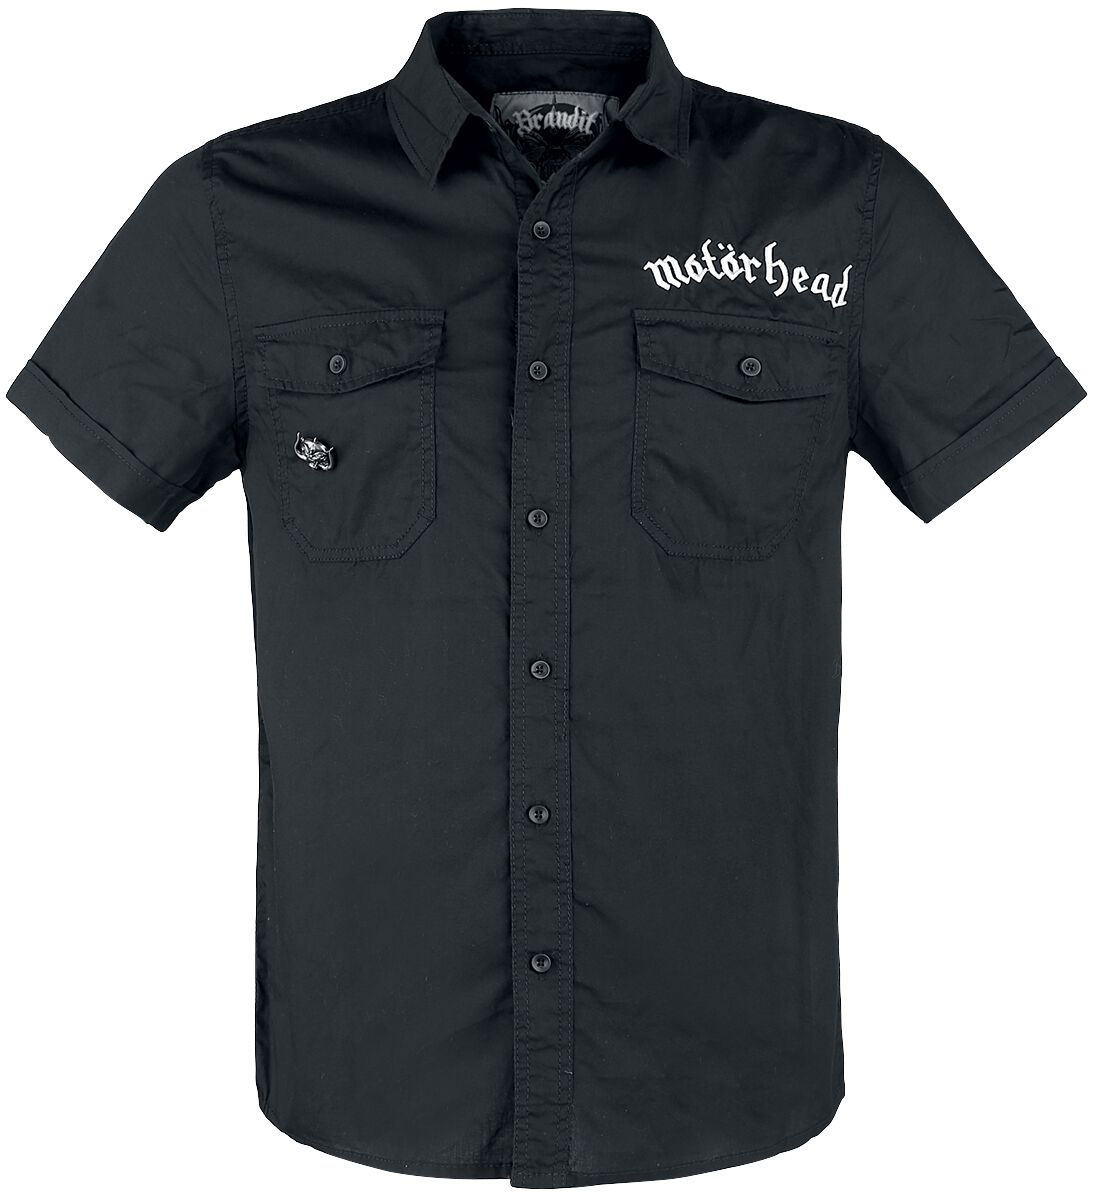 Motörhead Kurzarmhemd - Brandit Bastards - Roadstar Shirt - S bis 5XL - für Männer - Größe XL - schwarz  - Lizenziertes Merchandise!